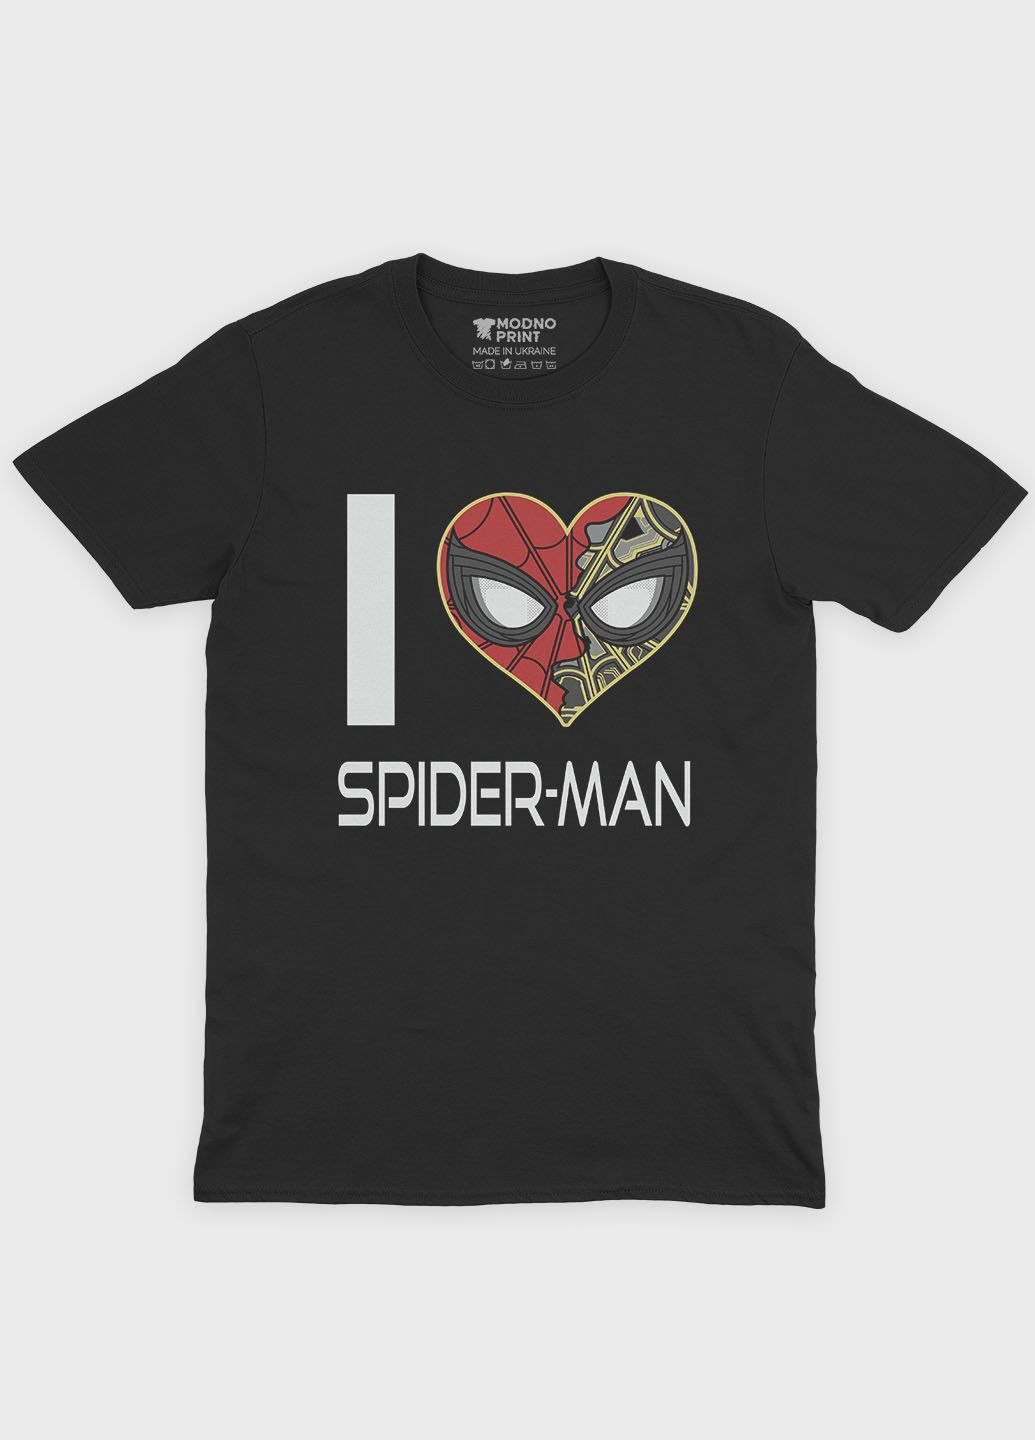 Черная демисезонная футболка для мальчика с принтом супергероя - человек-паук (ts001-1-bl-006-014-091-b) Modno